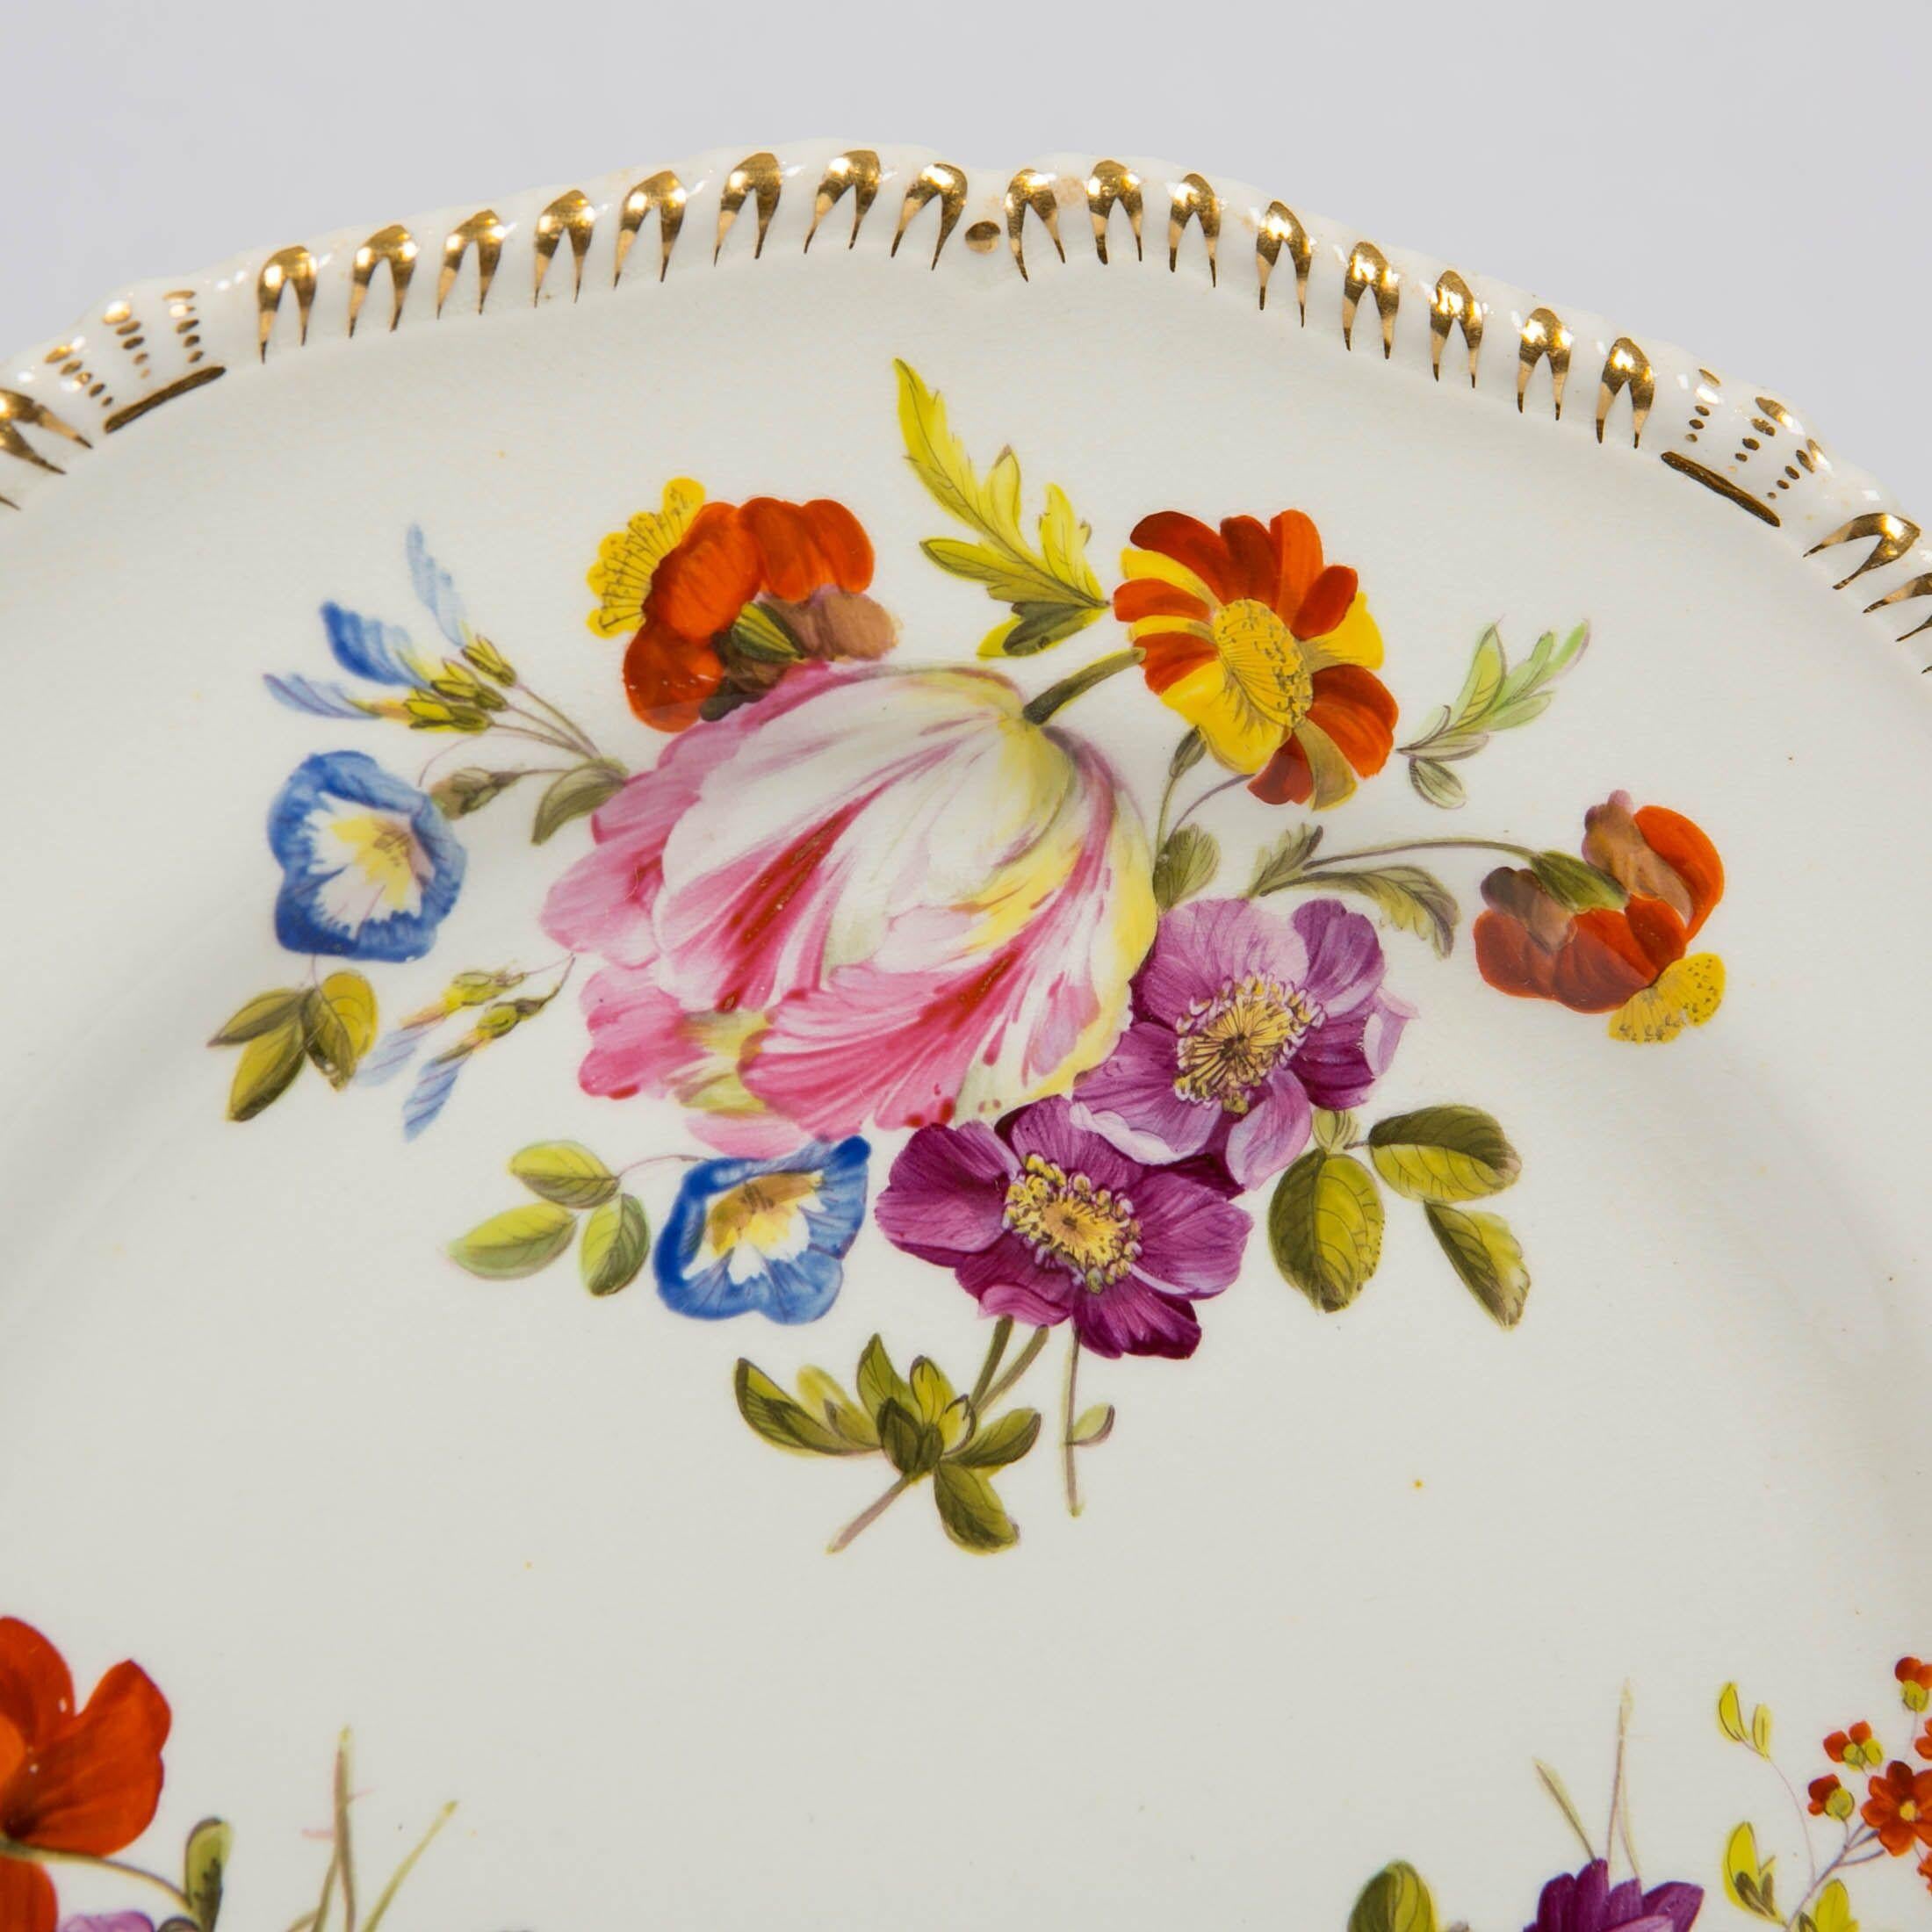 Cette paire d'assiettes en porcelaine de Derby a été peinte à la main, représentant de belles fleurs d'été dans des émaux polychromes brillants. Elles ont été peintes par l'éminent peintre de fleurs de Derby, Leonard Lead, vers 1825. Il a utilisé